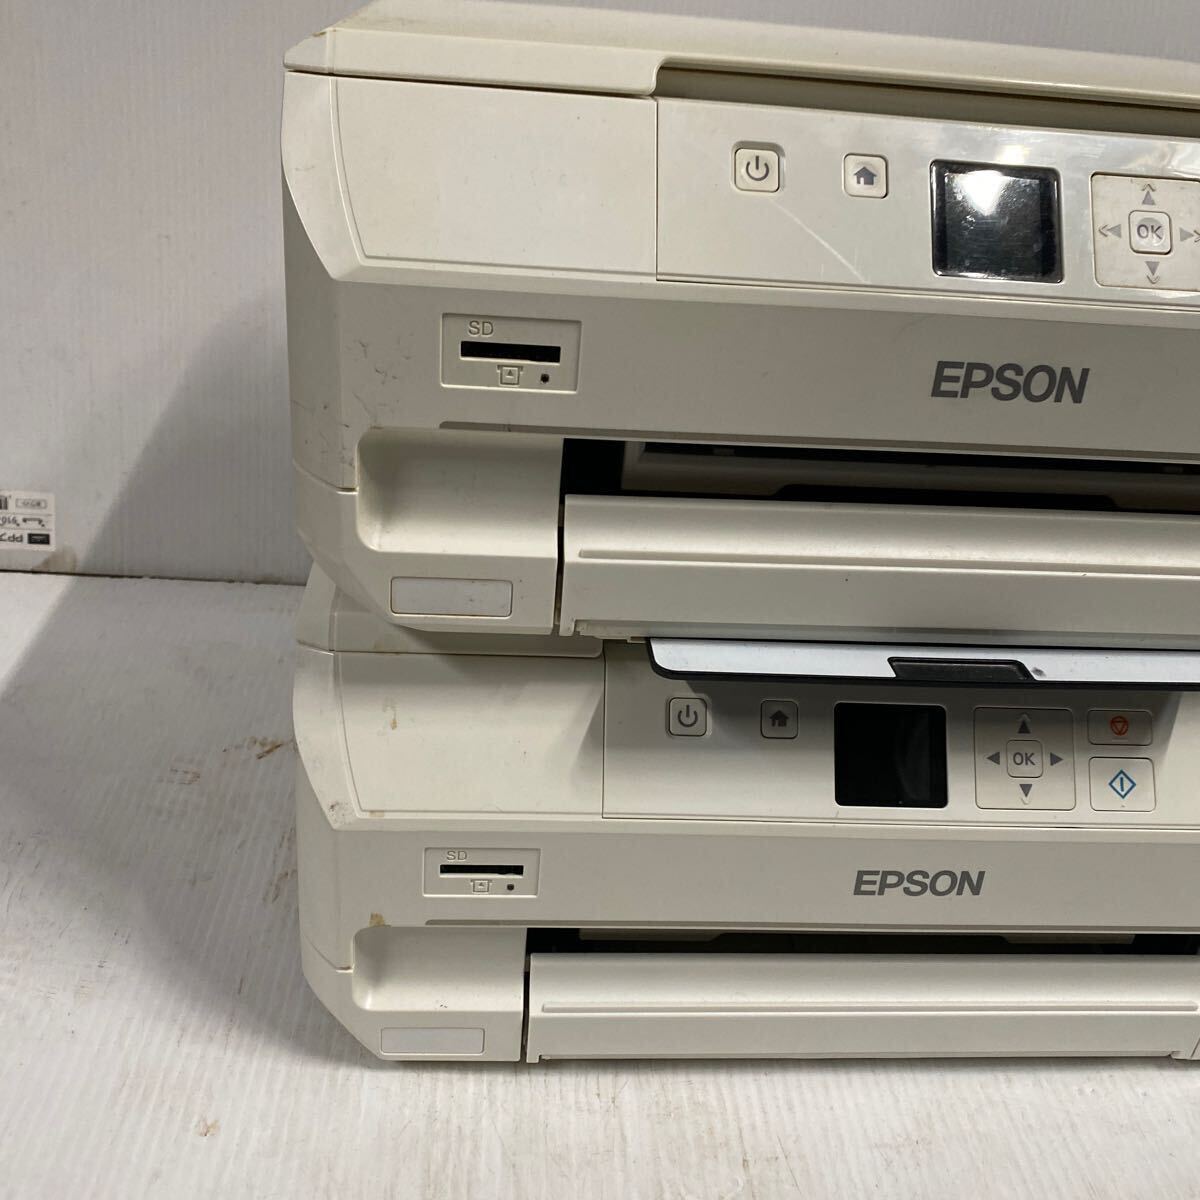 【超激安】エプソン/インクジェットプリンター/EPSON EP-707A カラリオColorio 6色コピー機/インクジェット複合機/USB 超破格大特価1000円_画像3